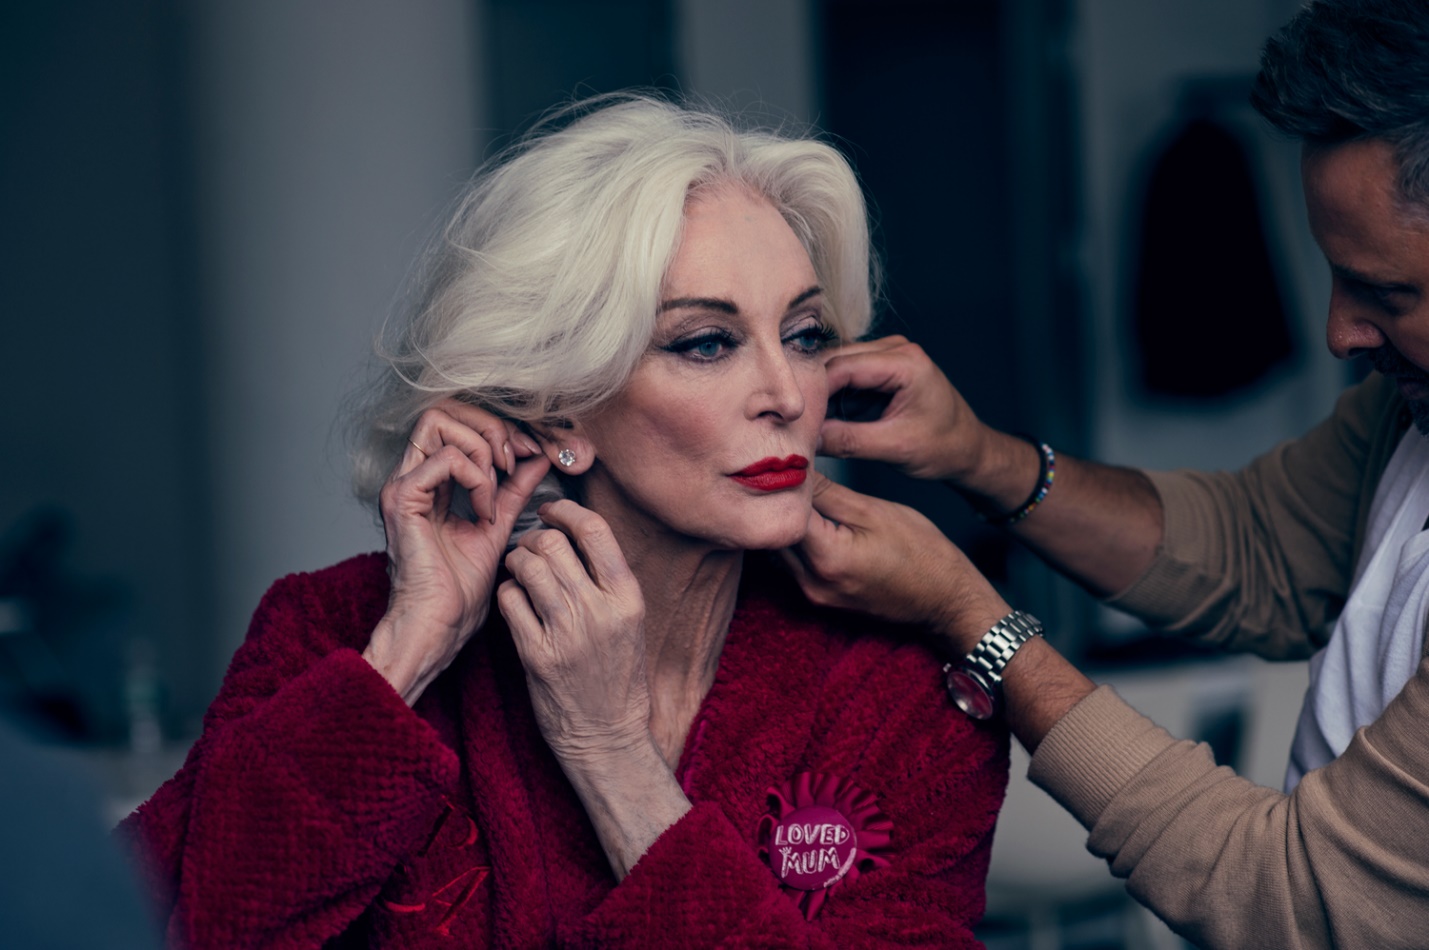 Удивительная Кармен Делль‘Орефиче. 86-летняя красавица на страницах «Vogue»